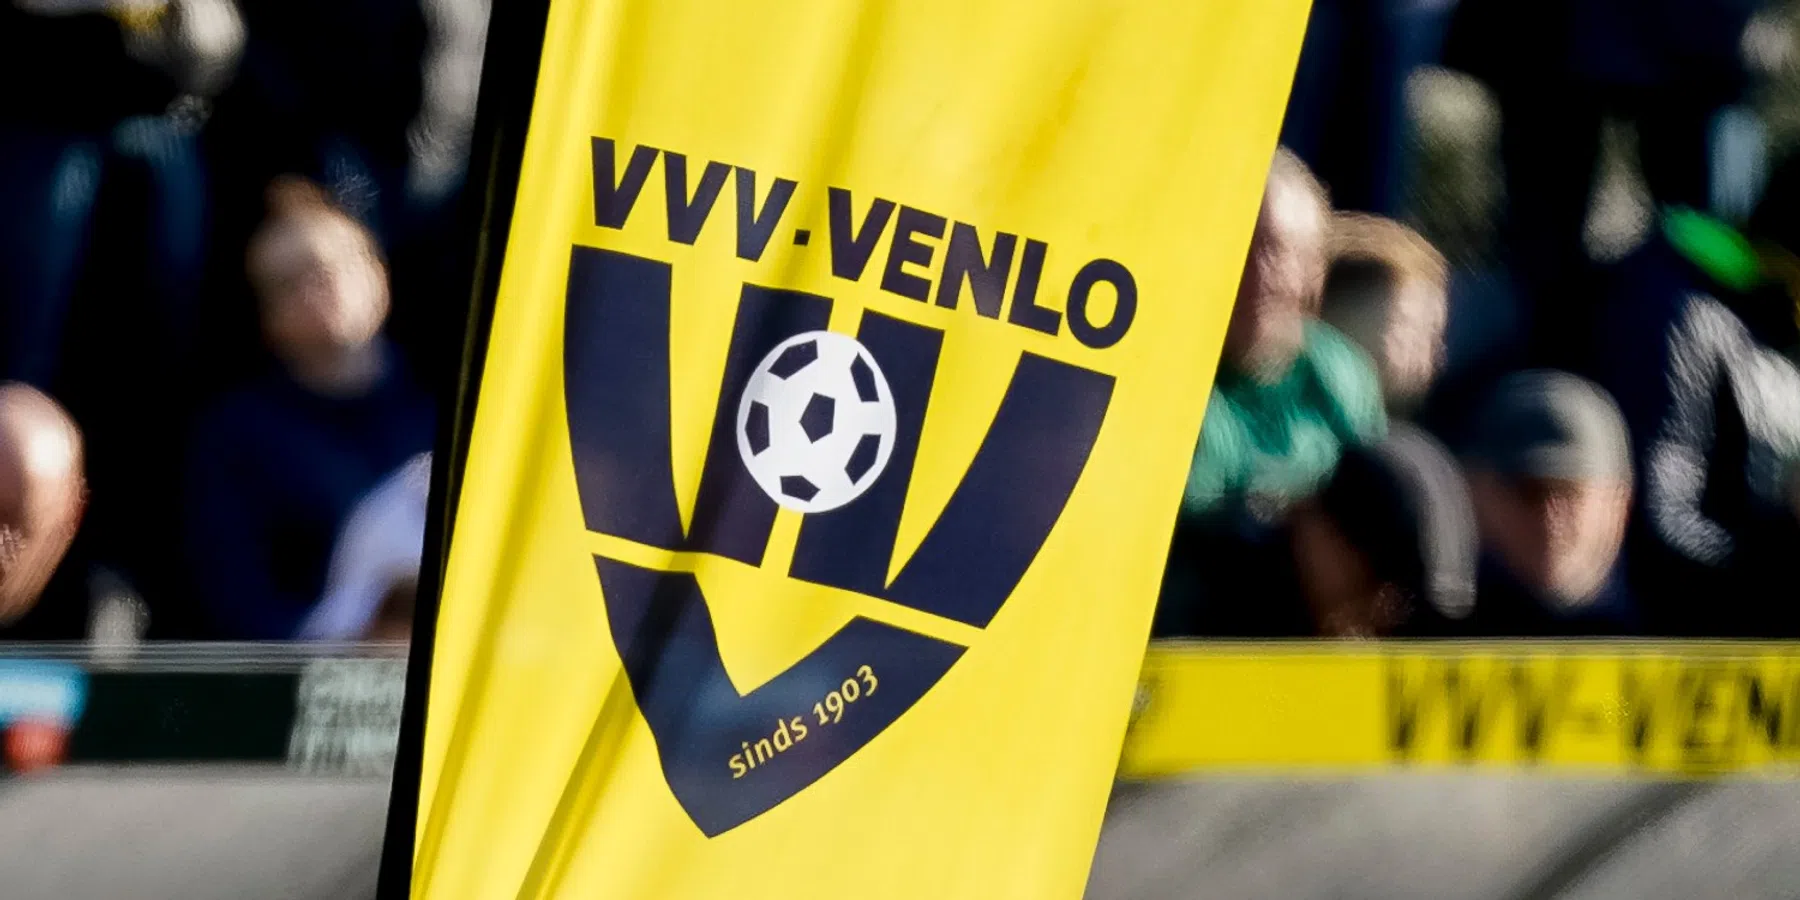 VVV-Venlo gaat samenwerken met FC Schalke 04